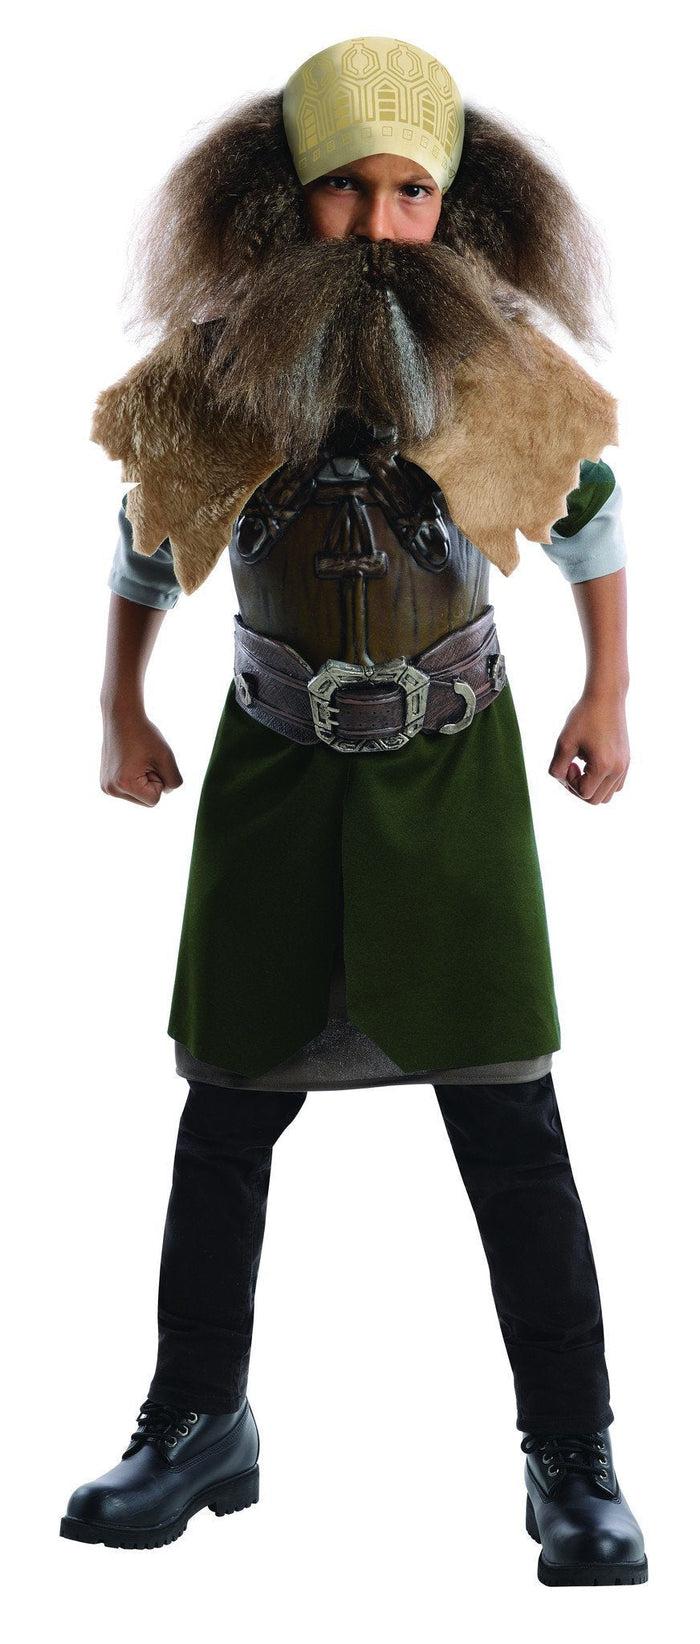 Dwalin Deluxe Costume for Kids - Warner Bros The Hobbit